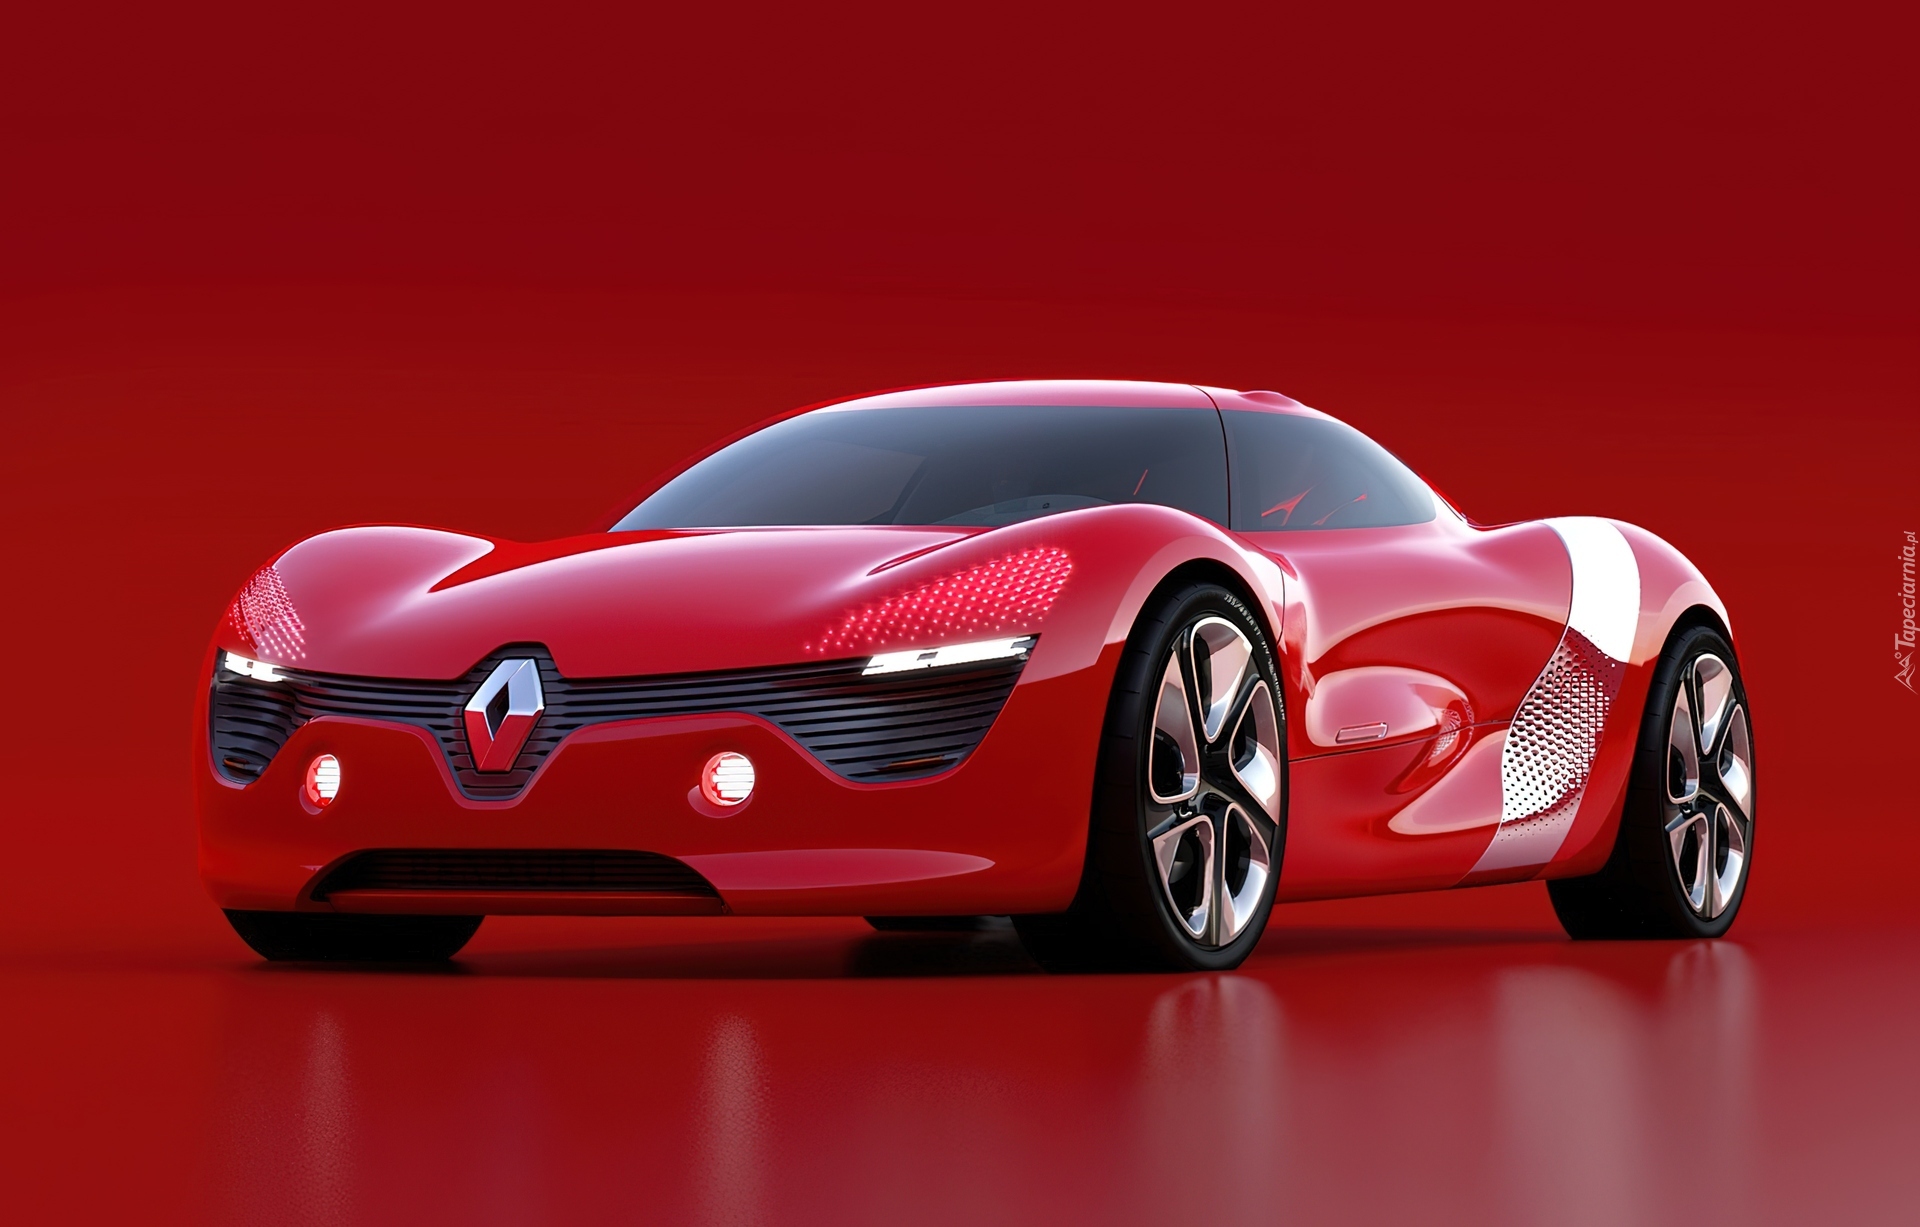 Renault Dezir, Prototyp